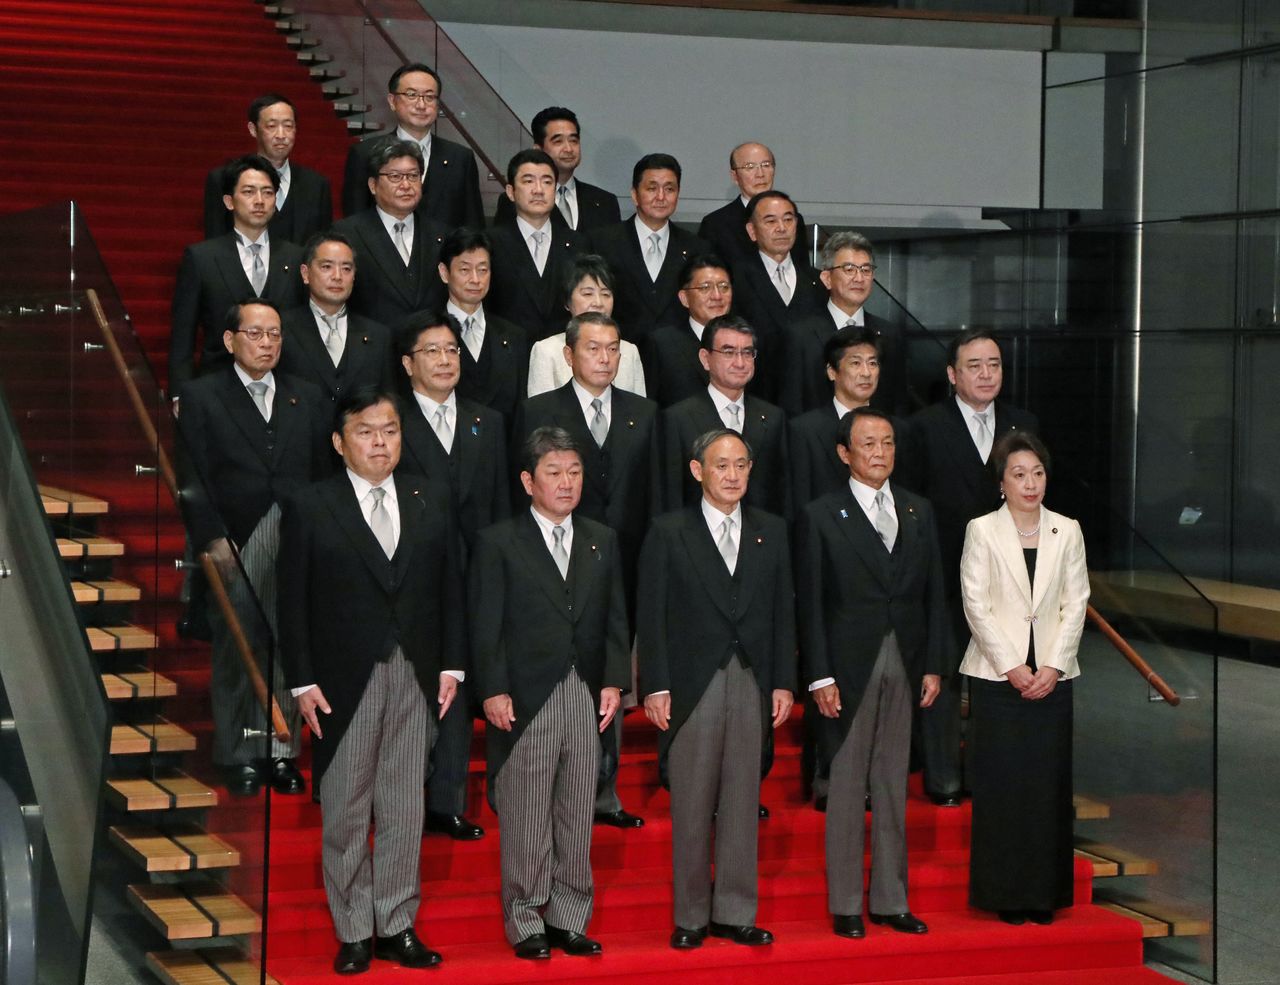 رئيس الوزراء سوغا يوشيهيدي في صدارة المقدمة، وسط أعضاء حكومته الجديدة في 16 سبتمبر/ أيلول في مقر عمل وإقامة رئيس وزراء اليابان (الصورة من جيجي برس)